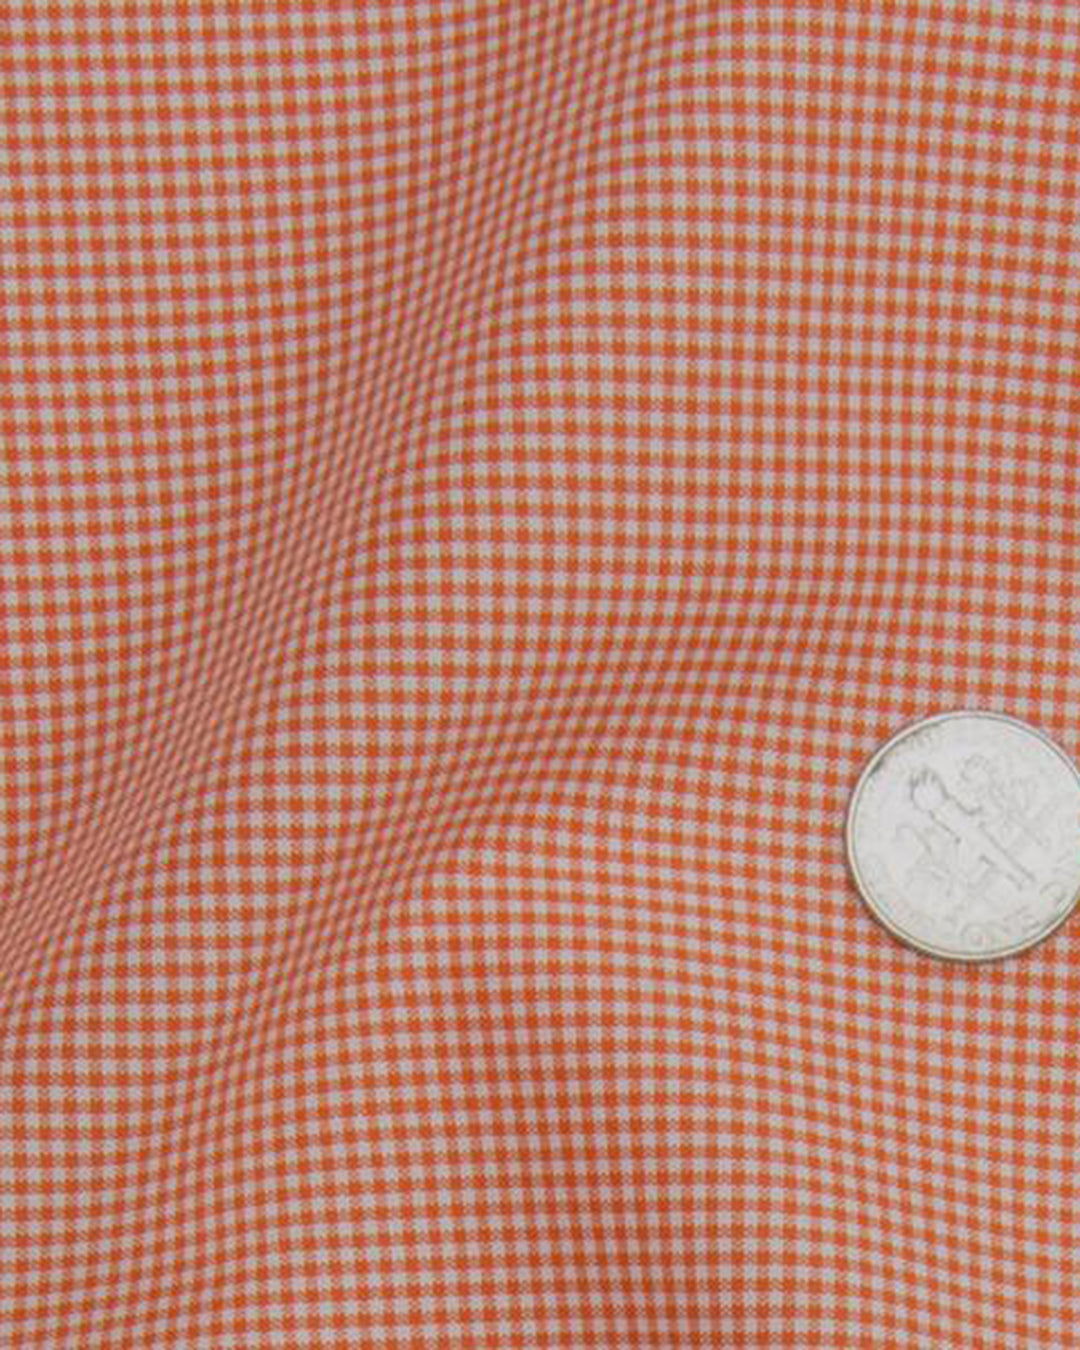 Dutch Orange Mini Checks On White